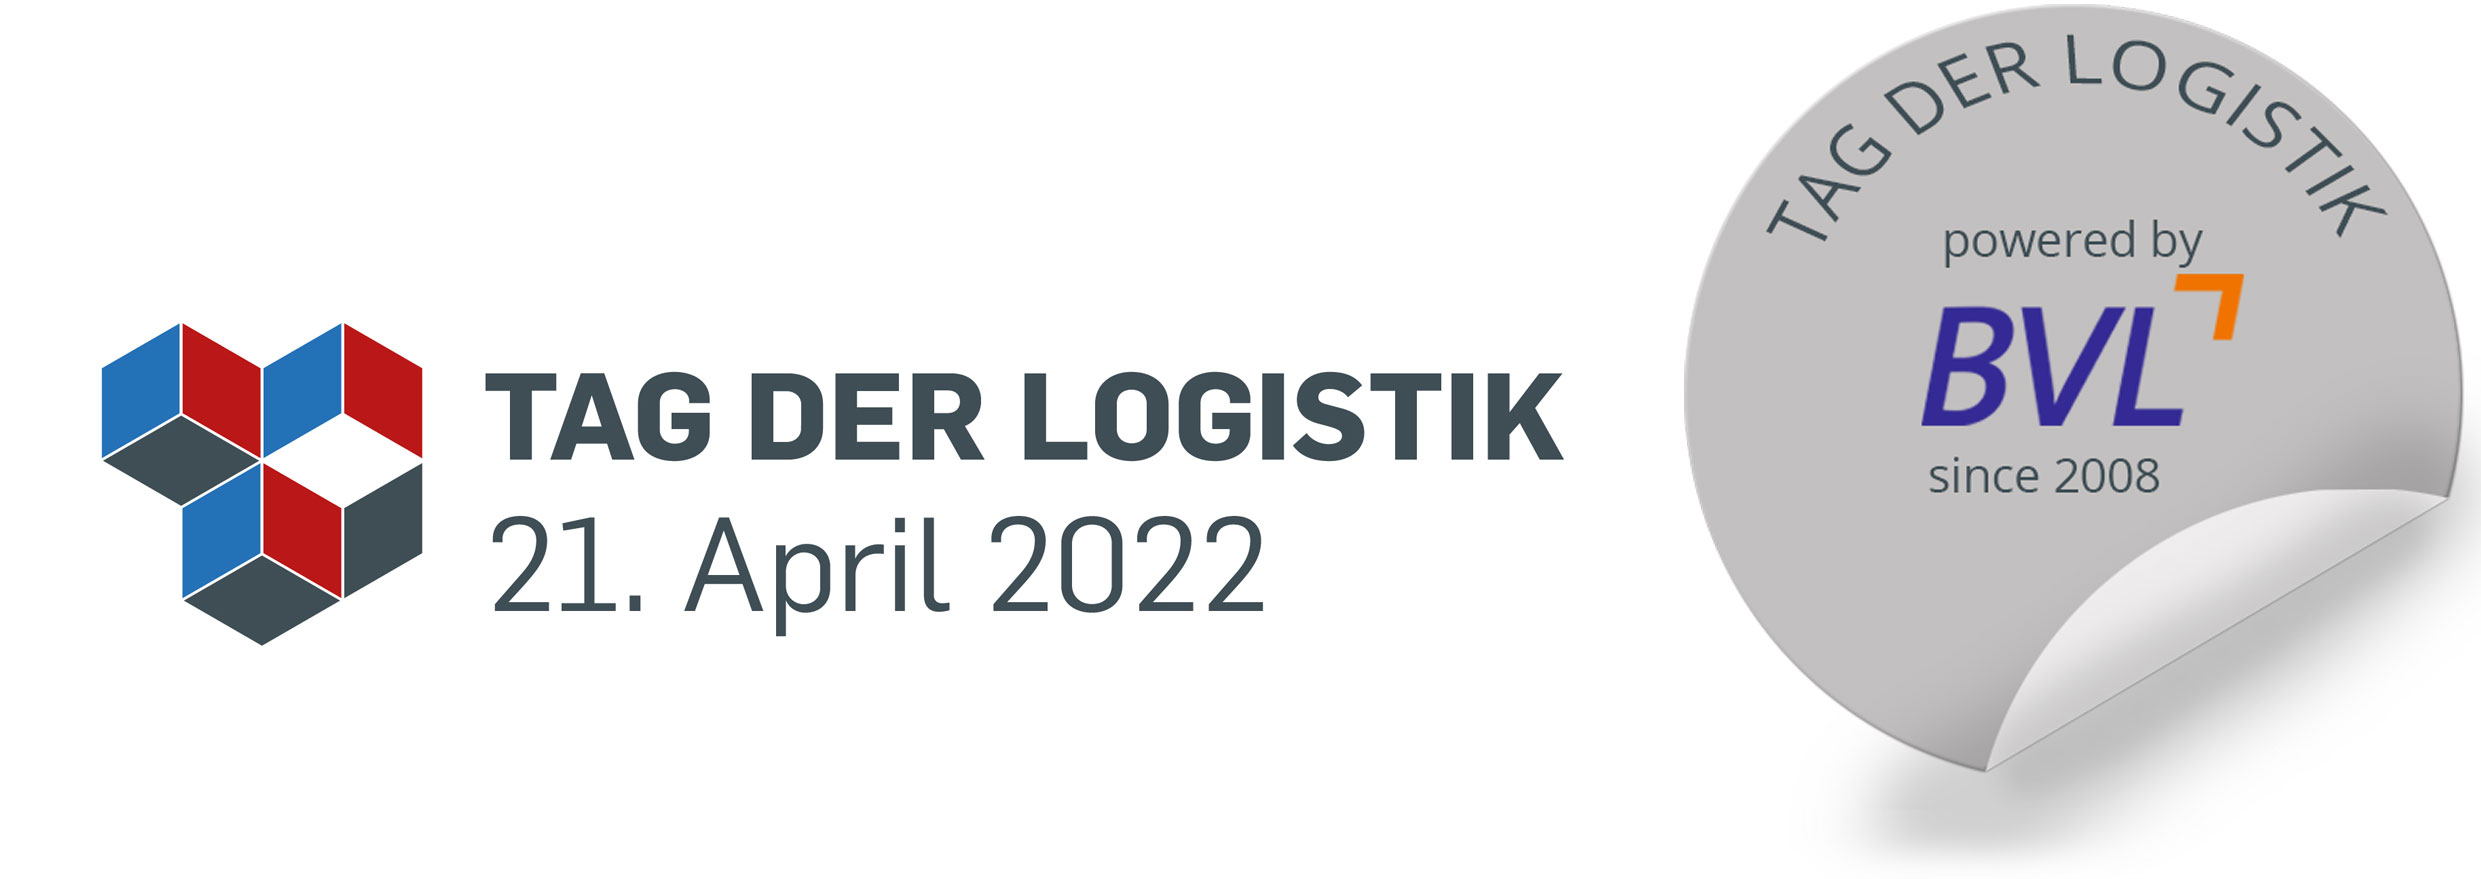 Tag der Logistik 2021